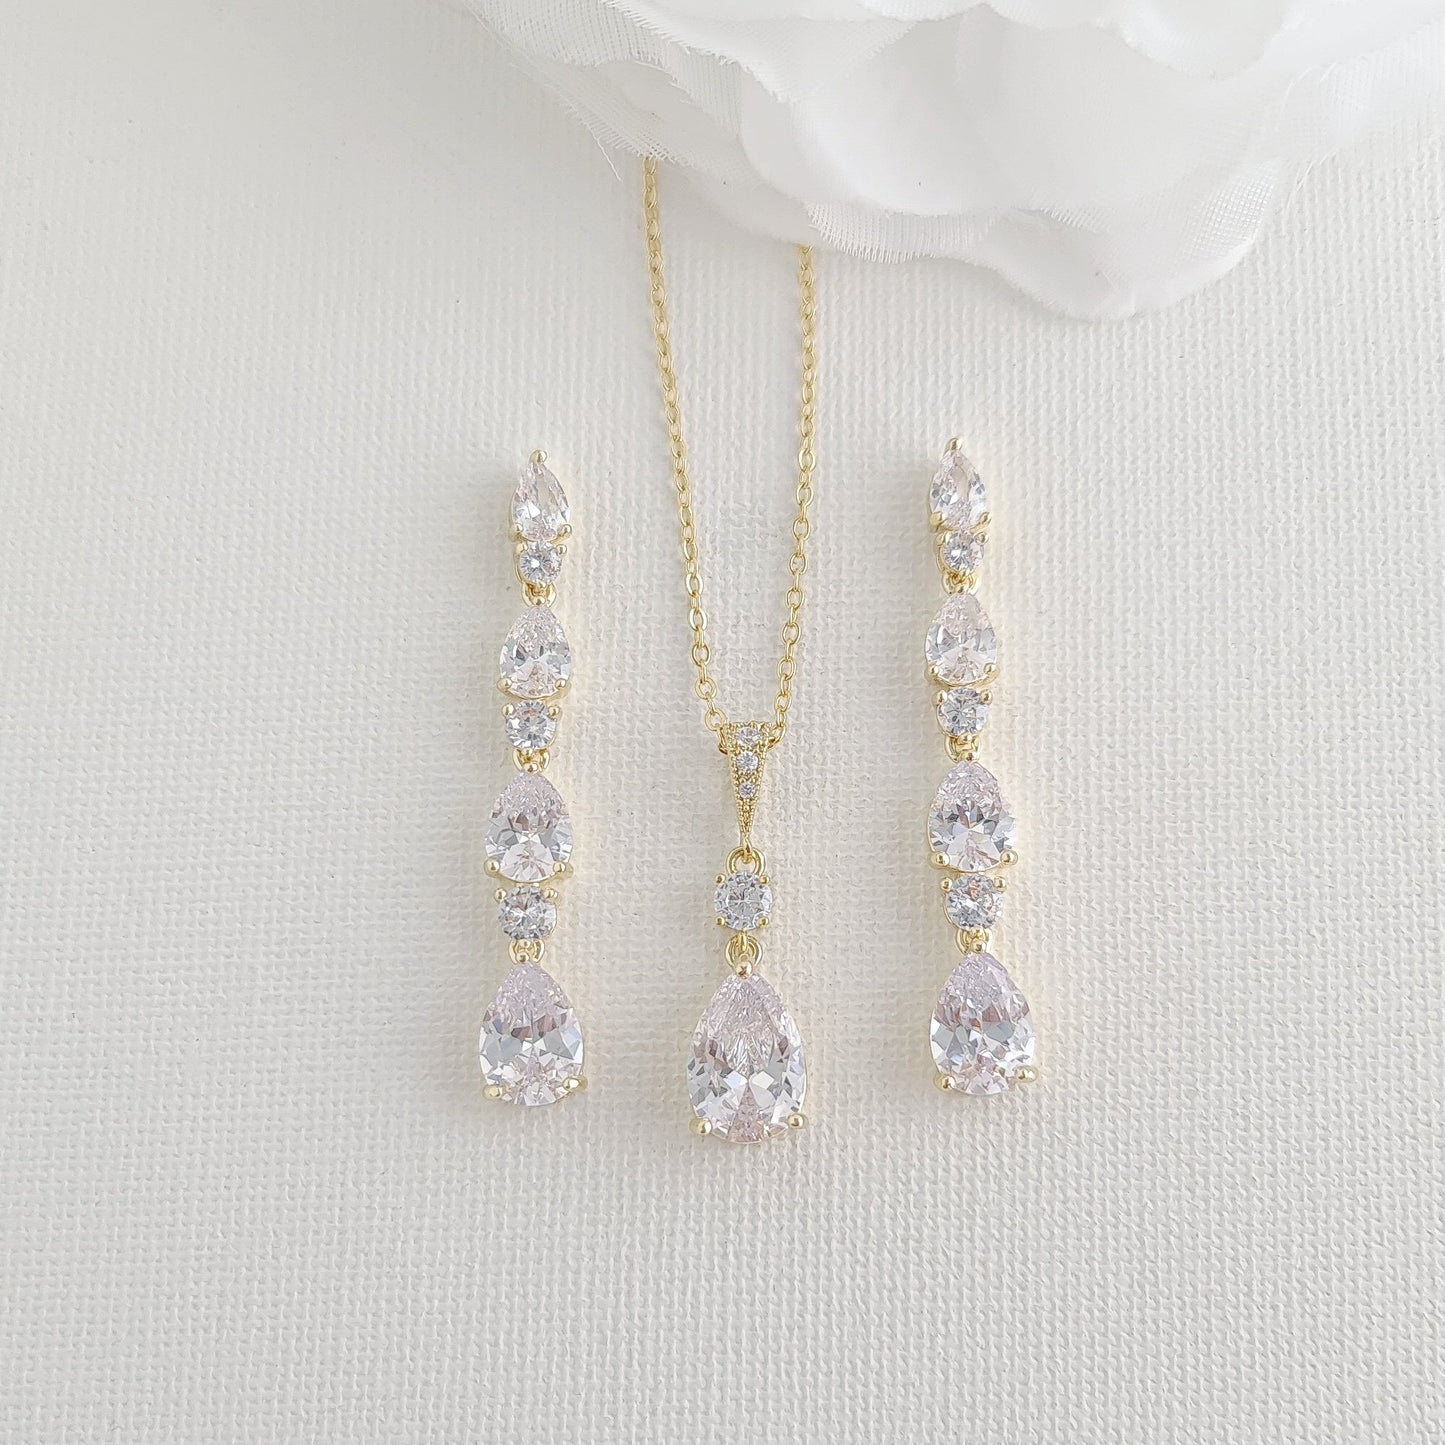 Small Teardrop Jewelry Set in Rose Gold for Wedding-Hazel